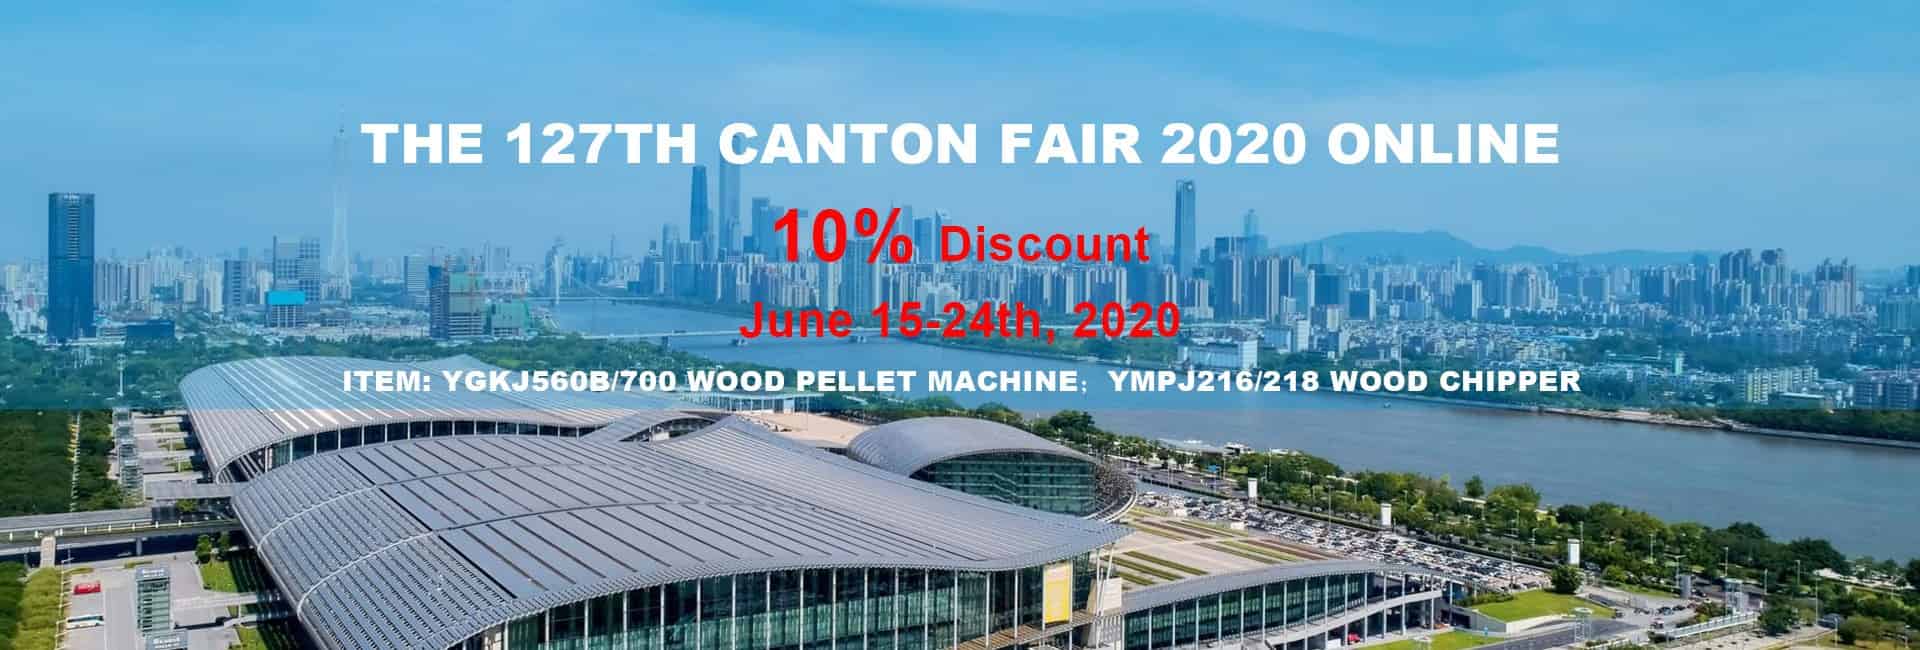 The 127th Canton Fair 2020 Online